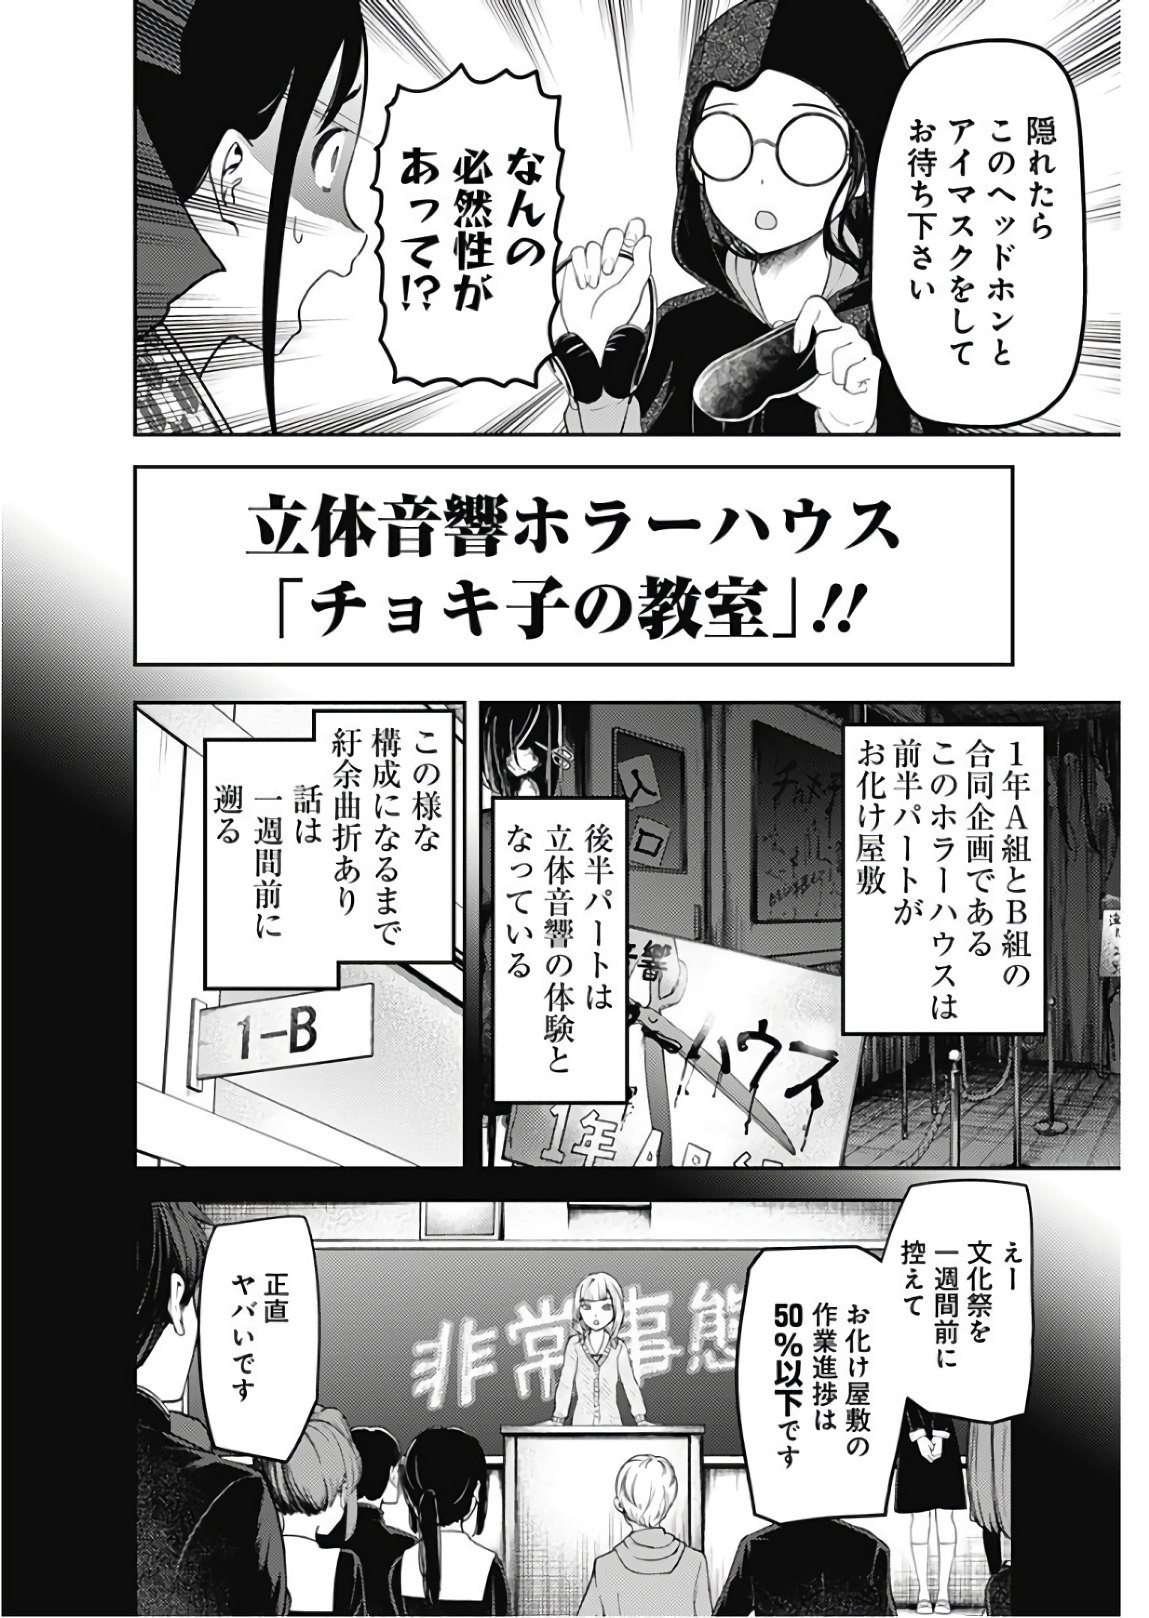 Kaguya-sama wa Kokurasetai - Tensai-tachi no Renai Zunousen - Chapter 115 - Page 4